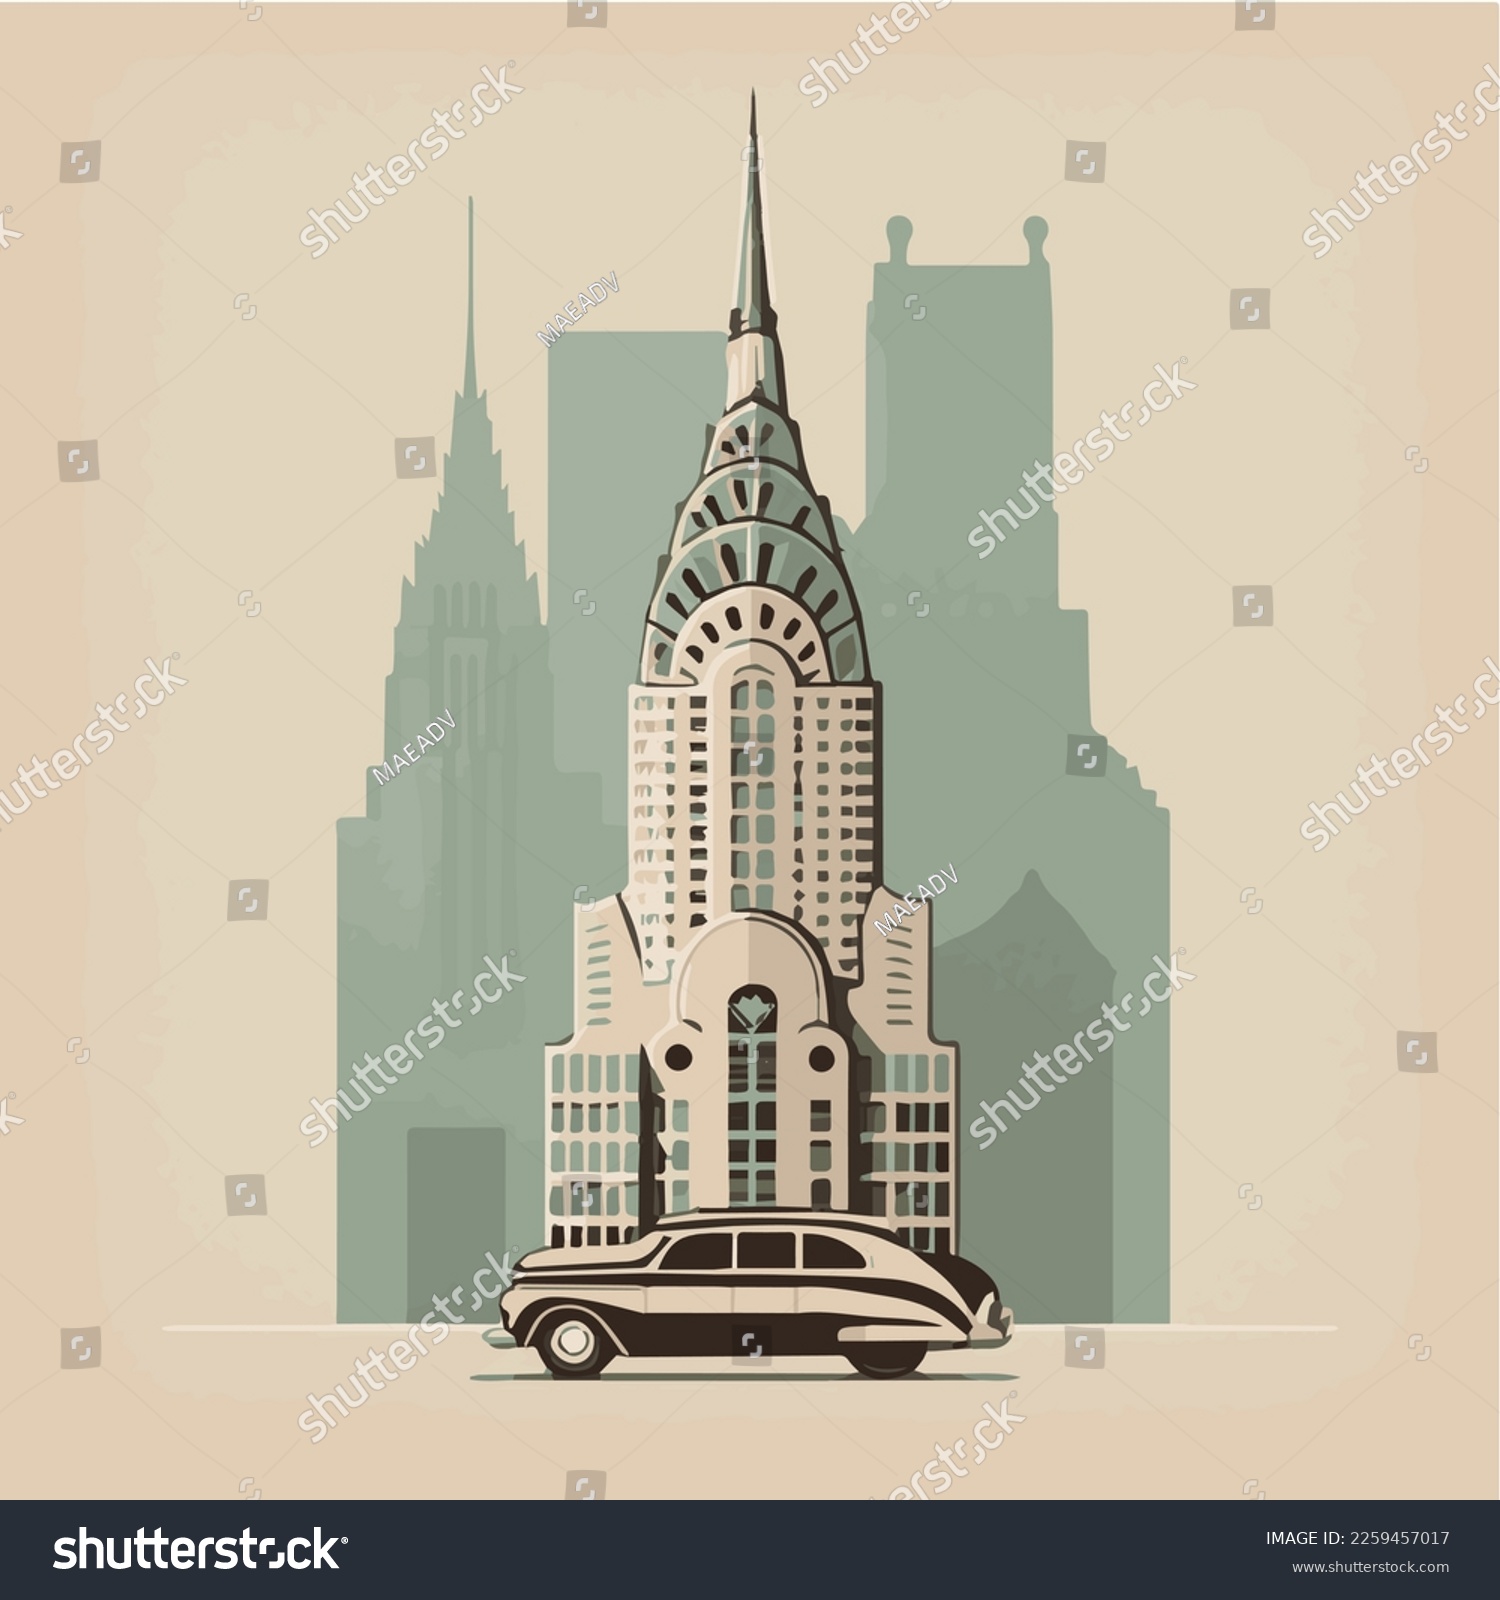 SVG of Creative vintage illustration of Chrysler building in New York svg